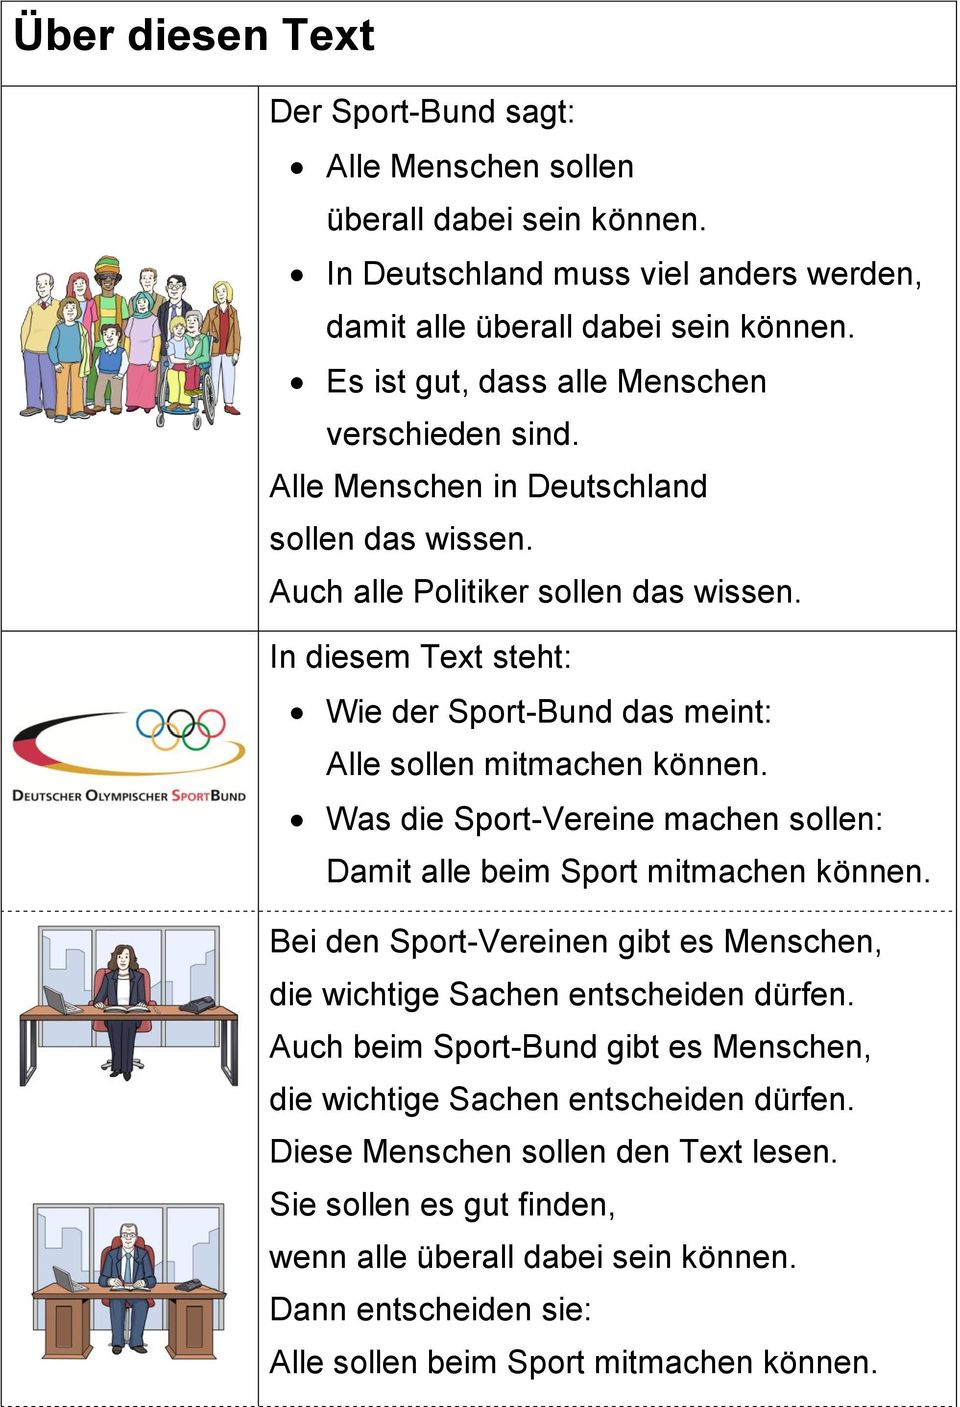 In diesem Text steht: Wie der Sport-Bund das meint: Alle sollen mitmachen können. Was die Sport-Vereine machen sollen: Damit alle beim Sport mitmachen können.